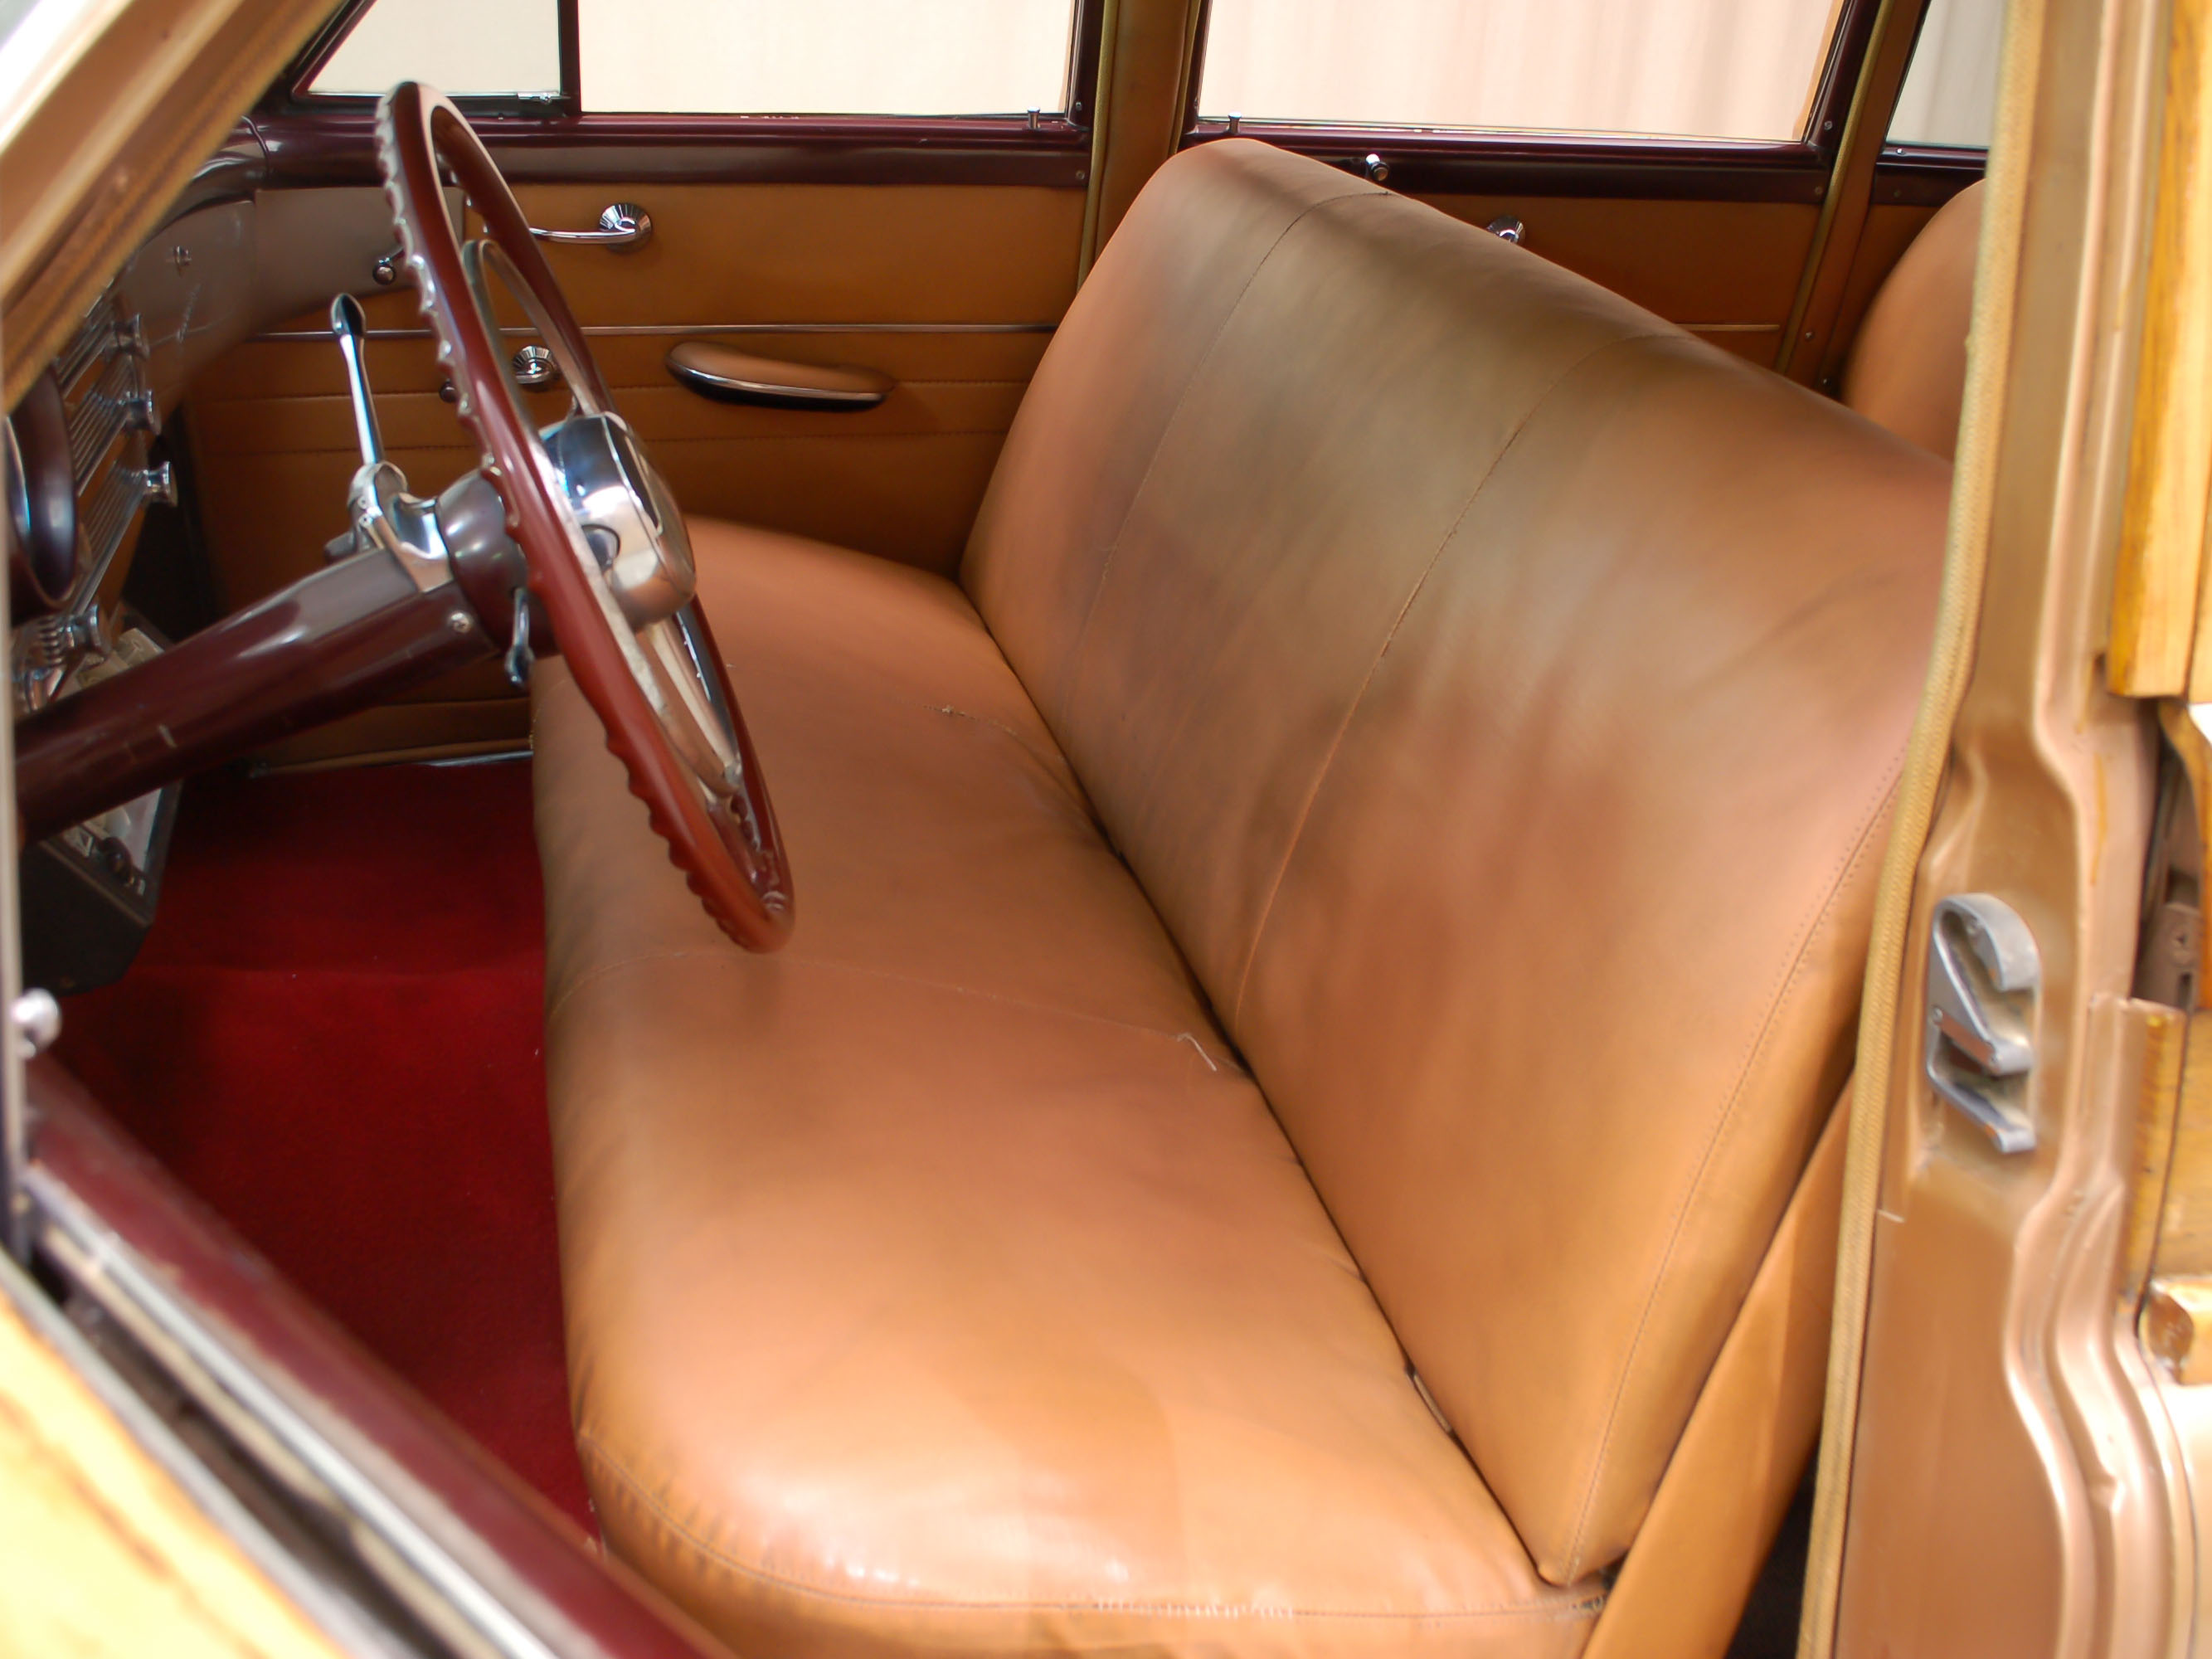 1950 buick roadmaster deluxe model 72r